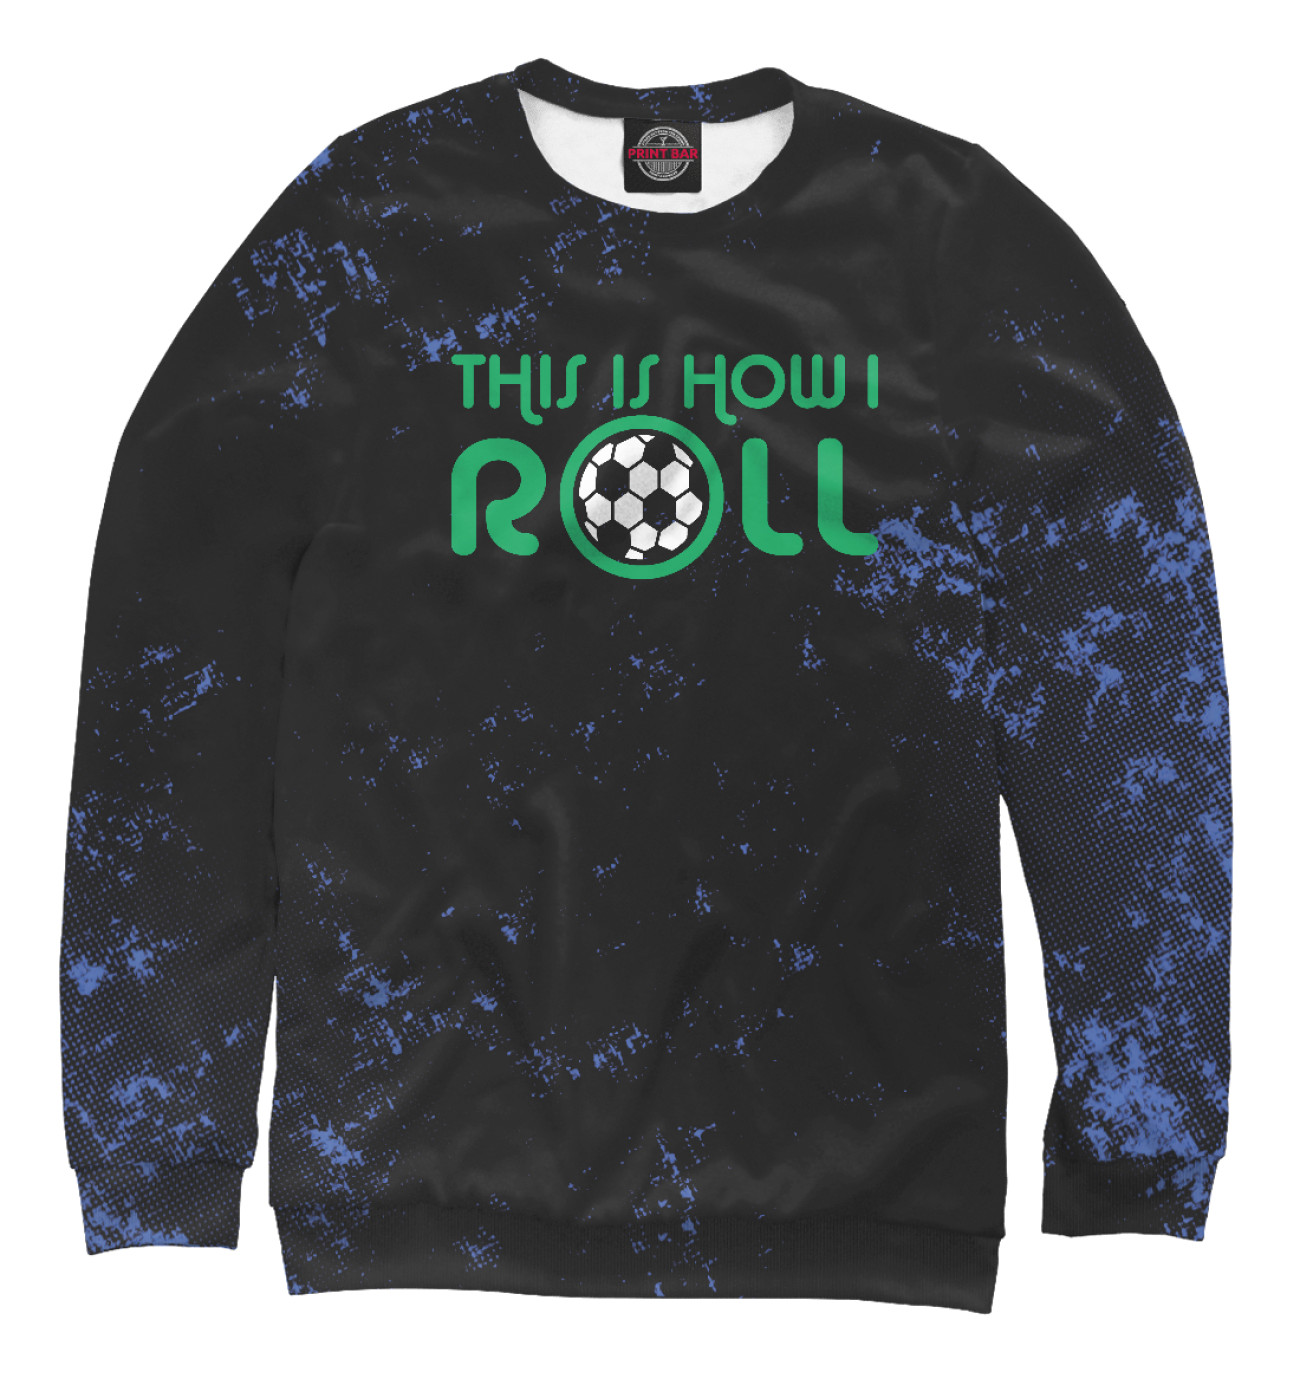 Мужской Свитшот This Is How I Roll Soccer, артикул: FTO-140586-swi-2